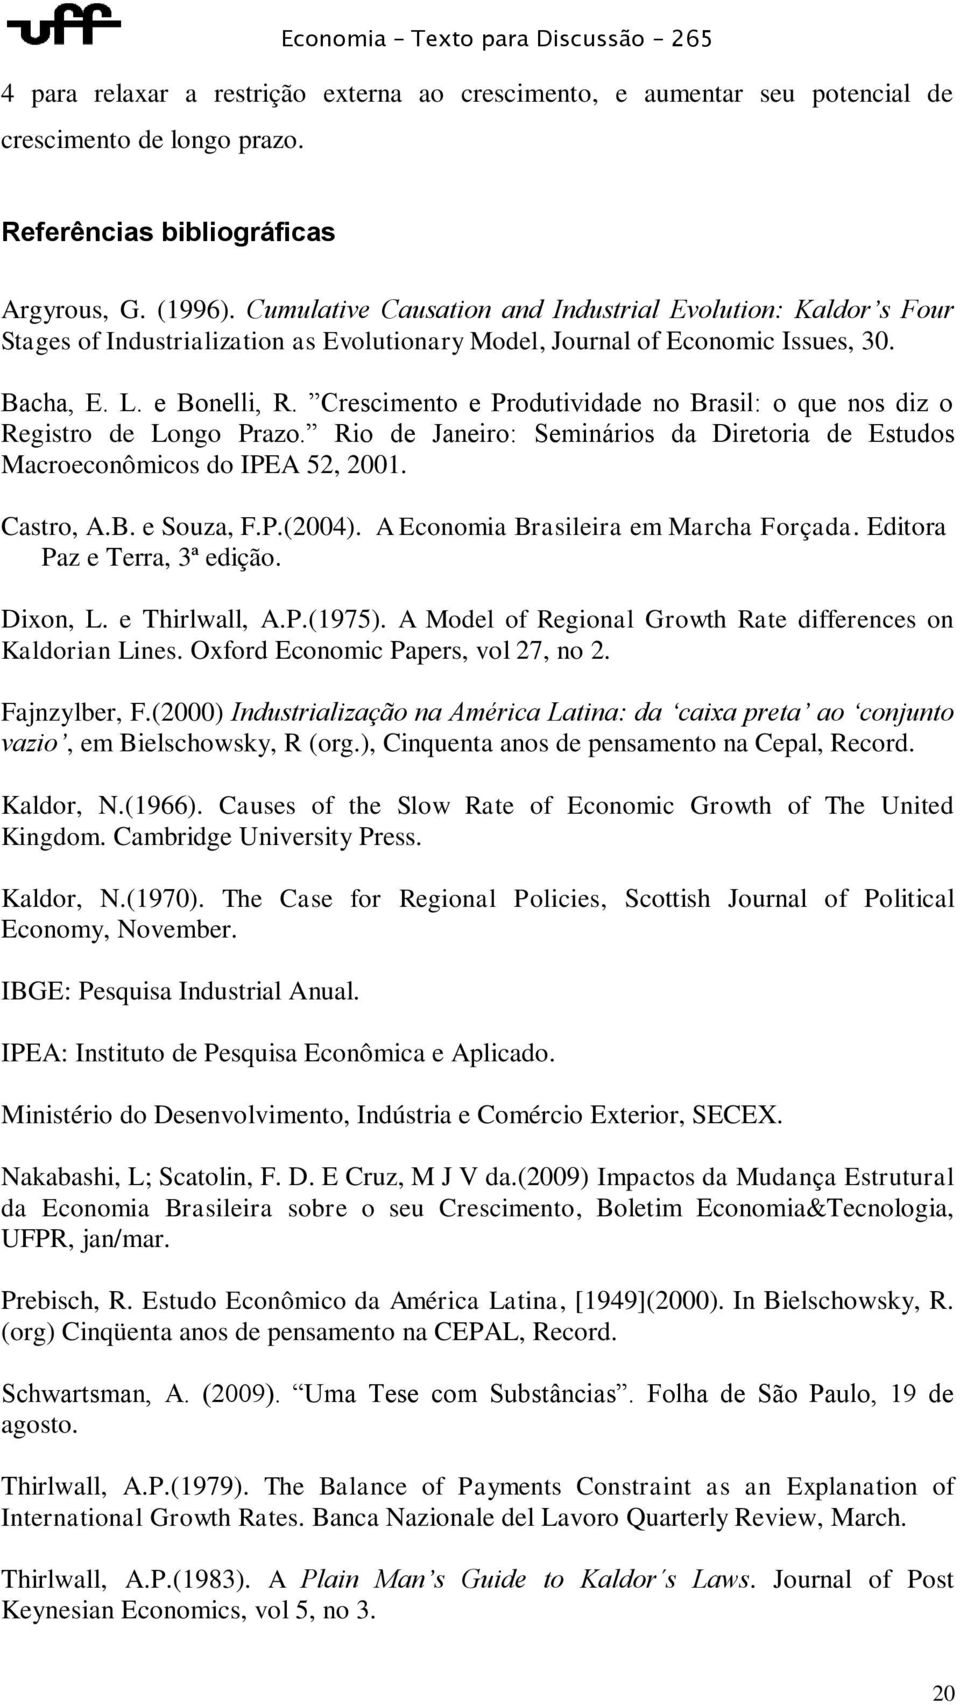 Crescimento e Produtividade no Brasil: o que nos diz o Registro de Longo Prazo. Rio de Janeiro: Seminários da Diretoria de Estudos Macroeconômicos do IPEA 52, 2001. Castro, A.B. e Souza, F.P.(2004).